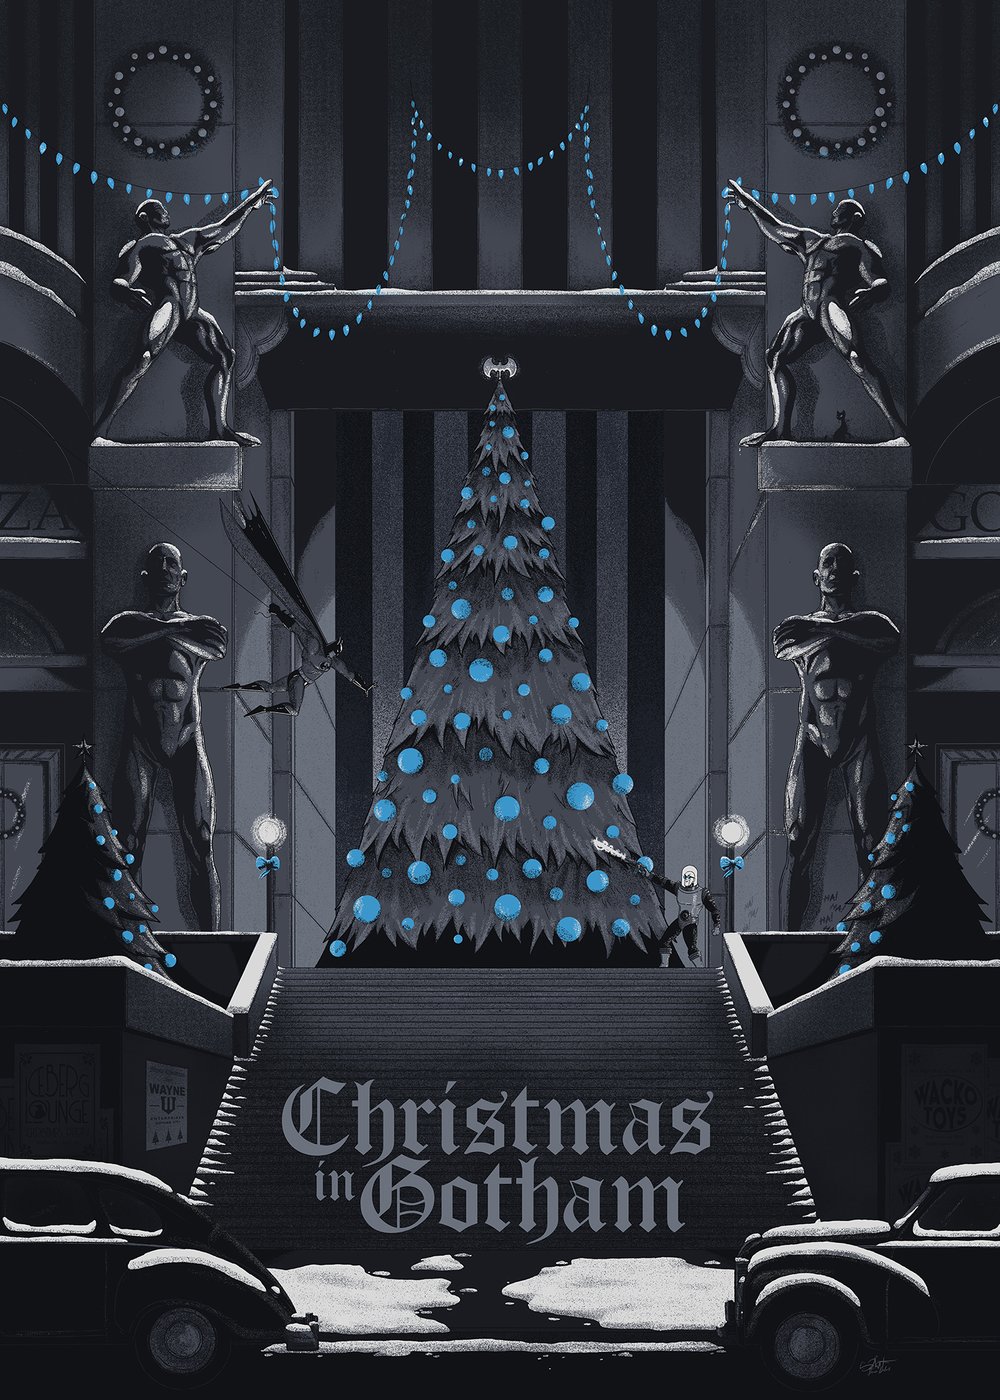 ðŸŽ„ Christmas in Gotham - 2 versions ðŸŽ„